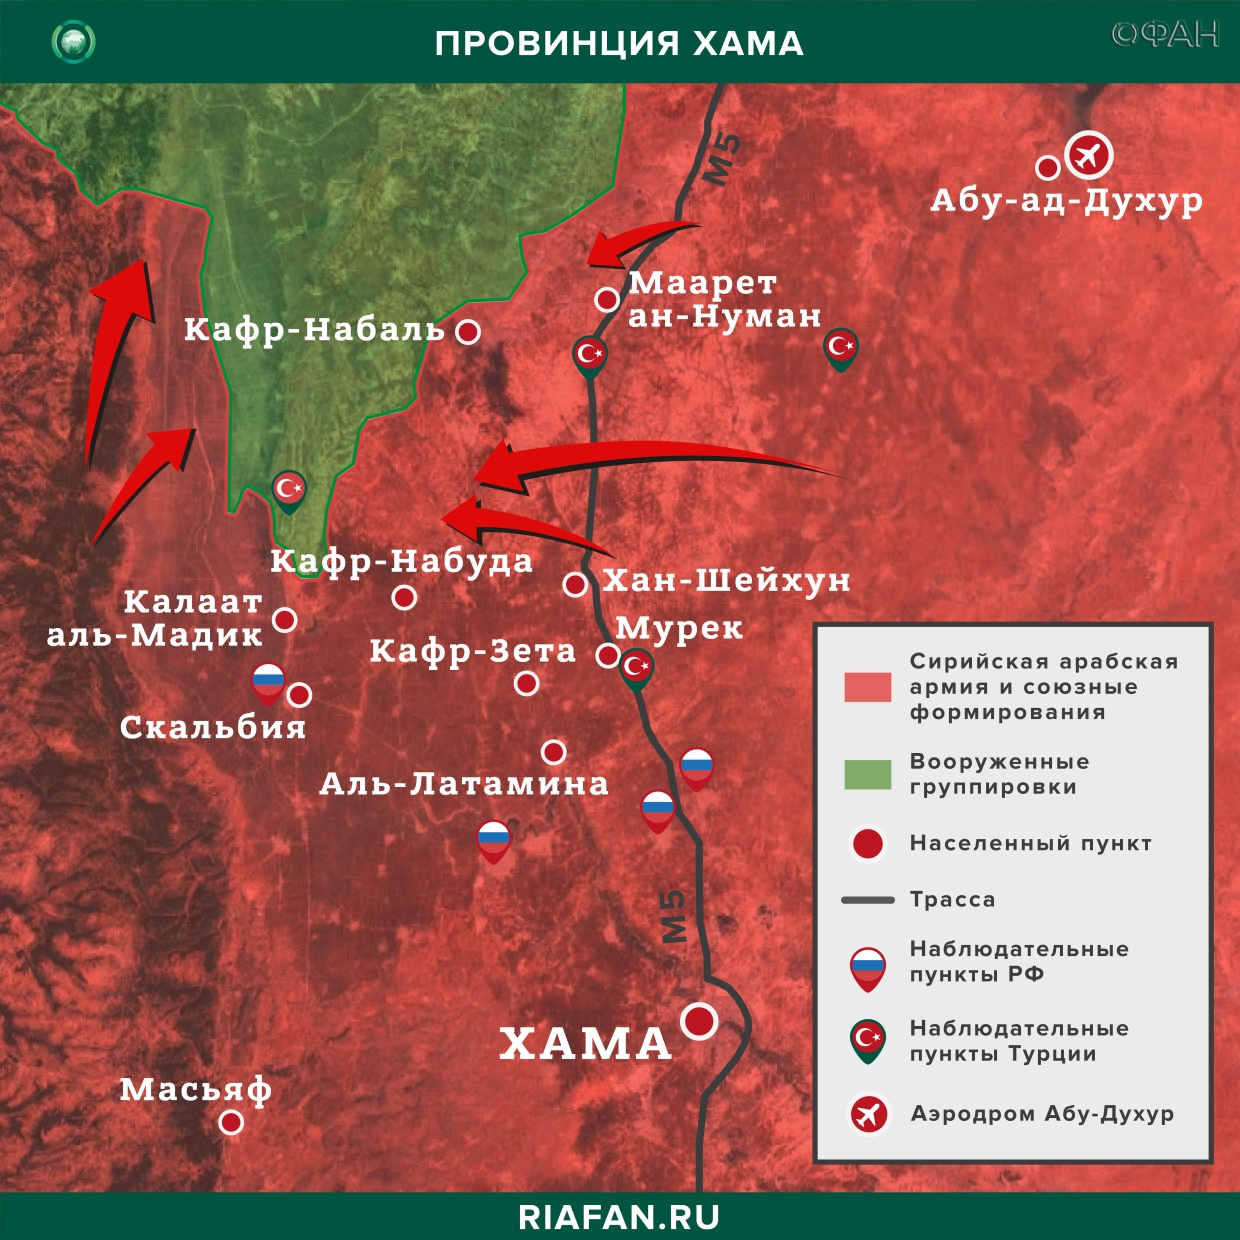 Сирия новости 1 марта 19.30: сирийские системы ПВО будут сбивать все вражеские цели над Идлибом, провокации боевиков в Даръа